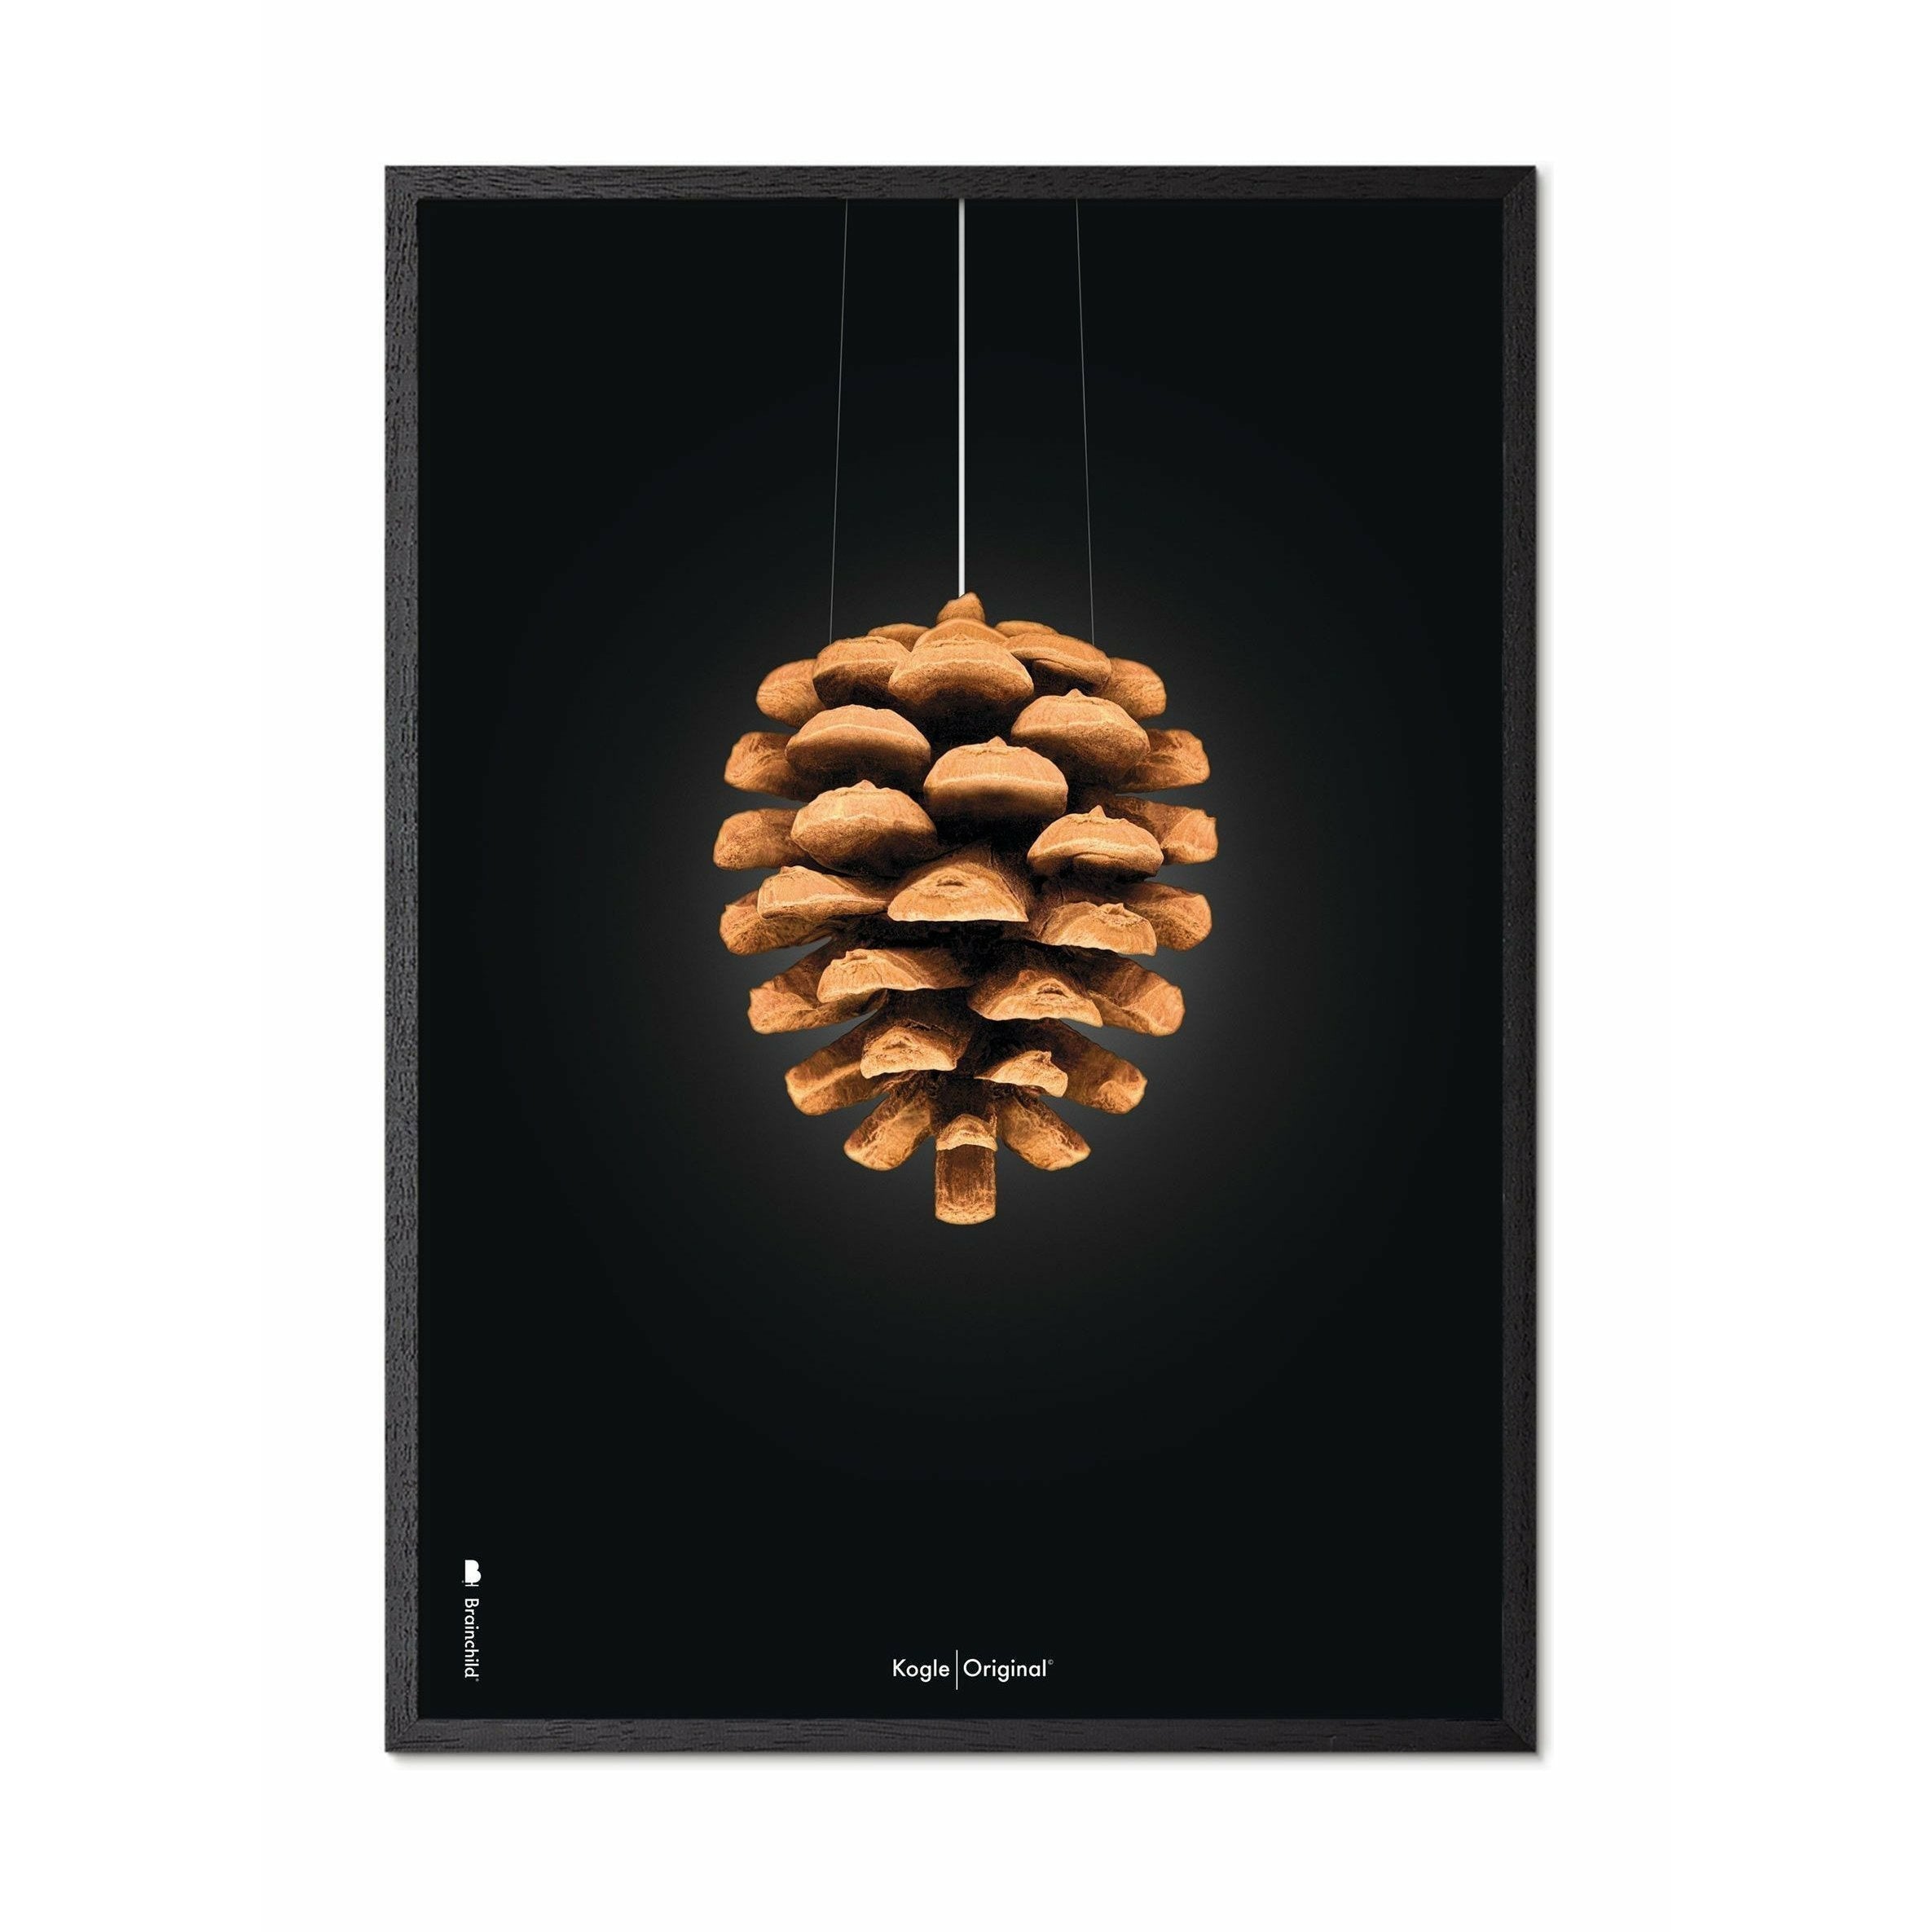 Póster clásico de cono de pino de creación, marco hecho de madera lacada negra de 70x100 cm, fondo negro